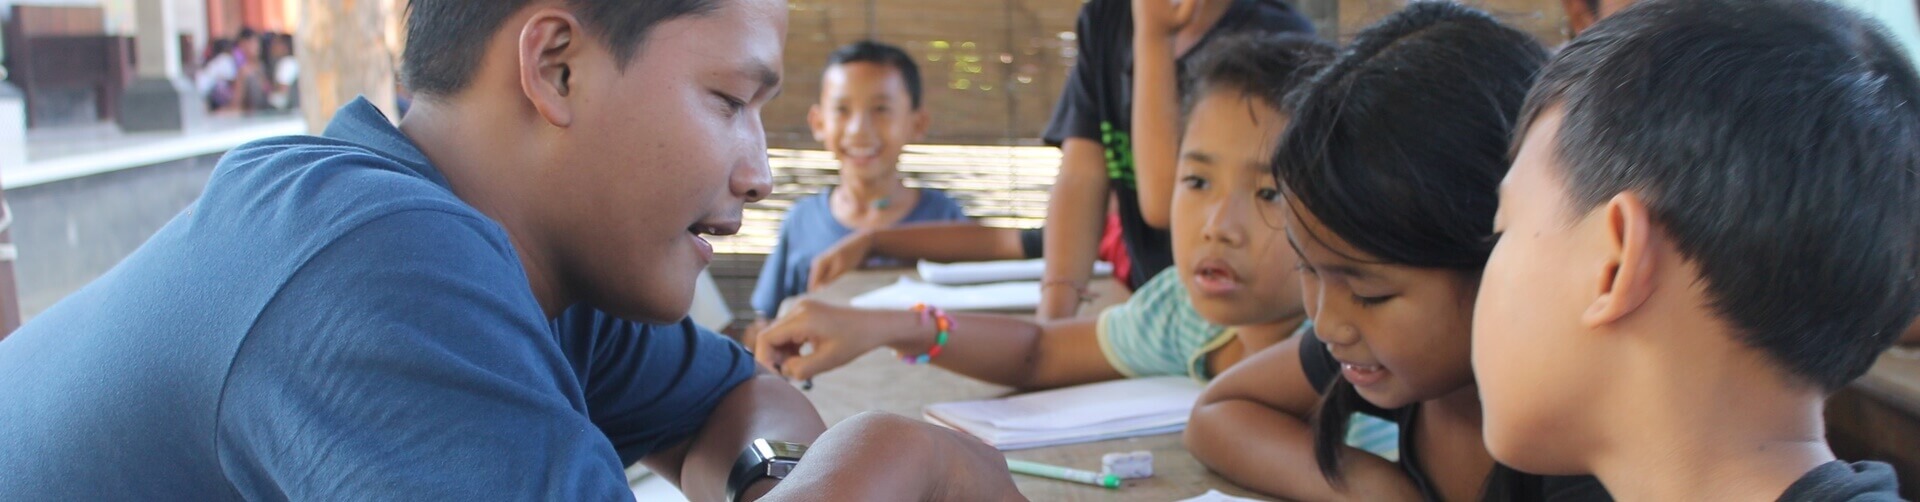 Volunteer Teaching Program in Bali